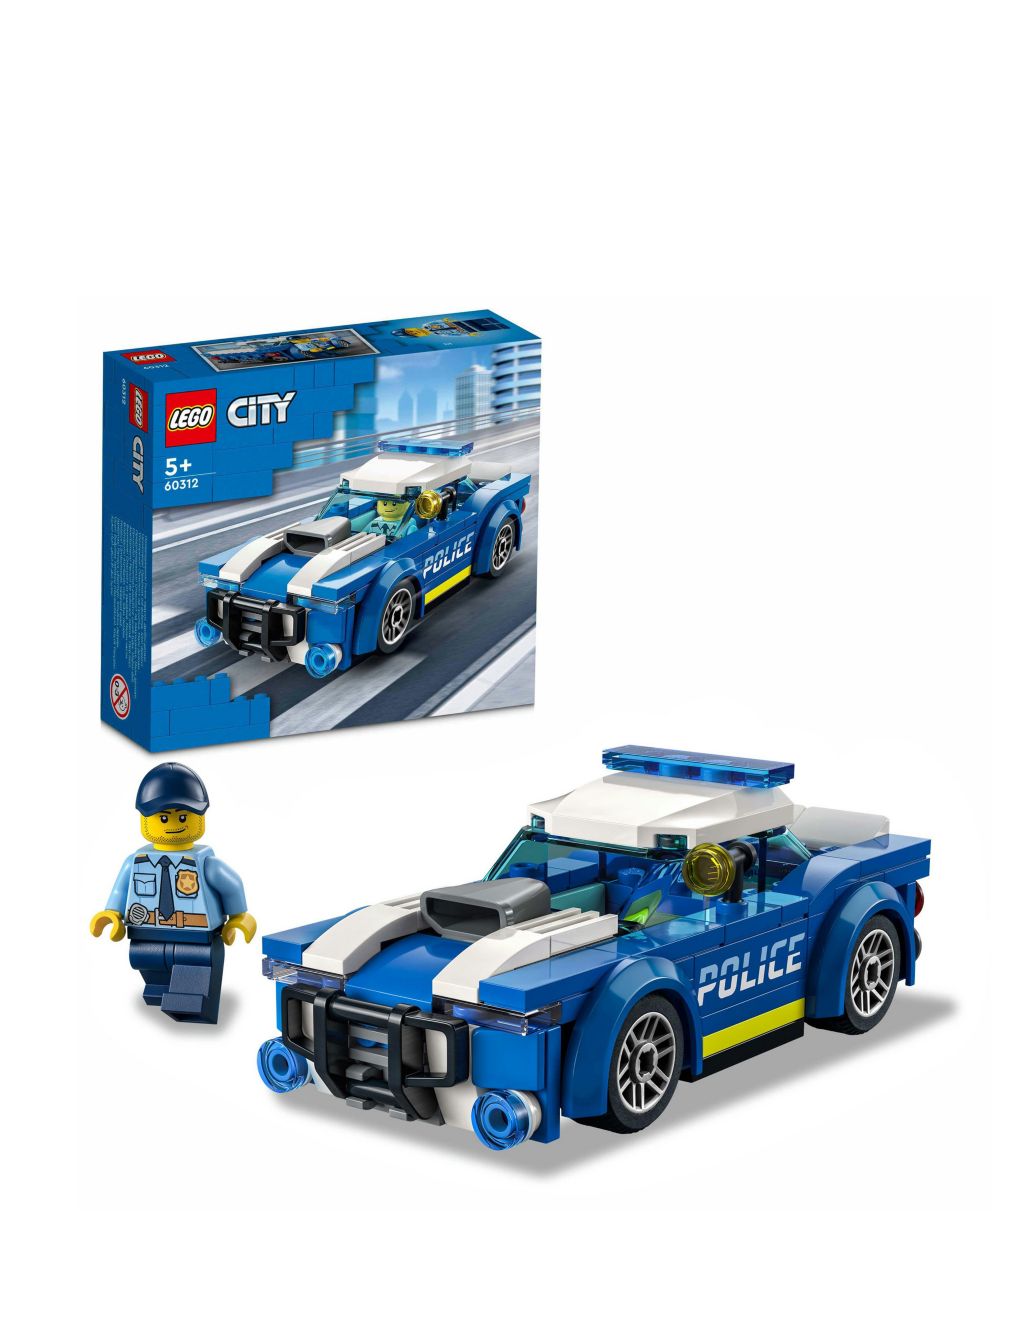 LEGO® City Police Car 60312 (5+ Yrs)